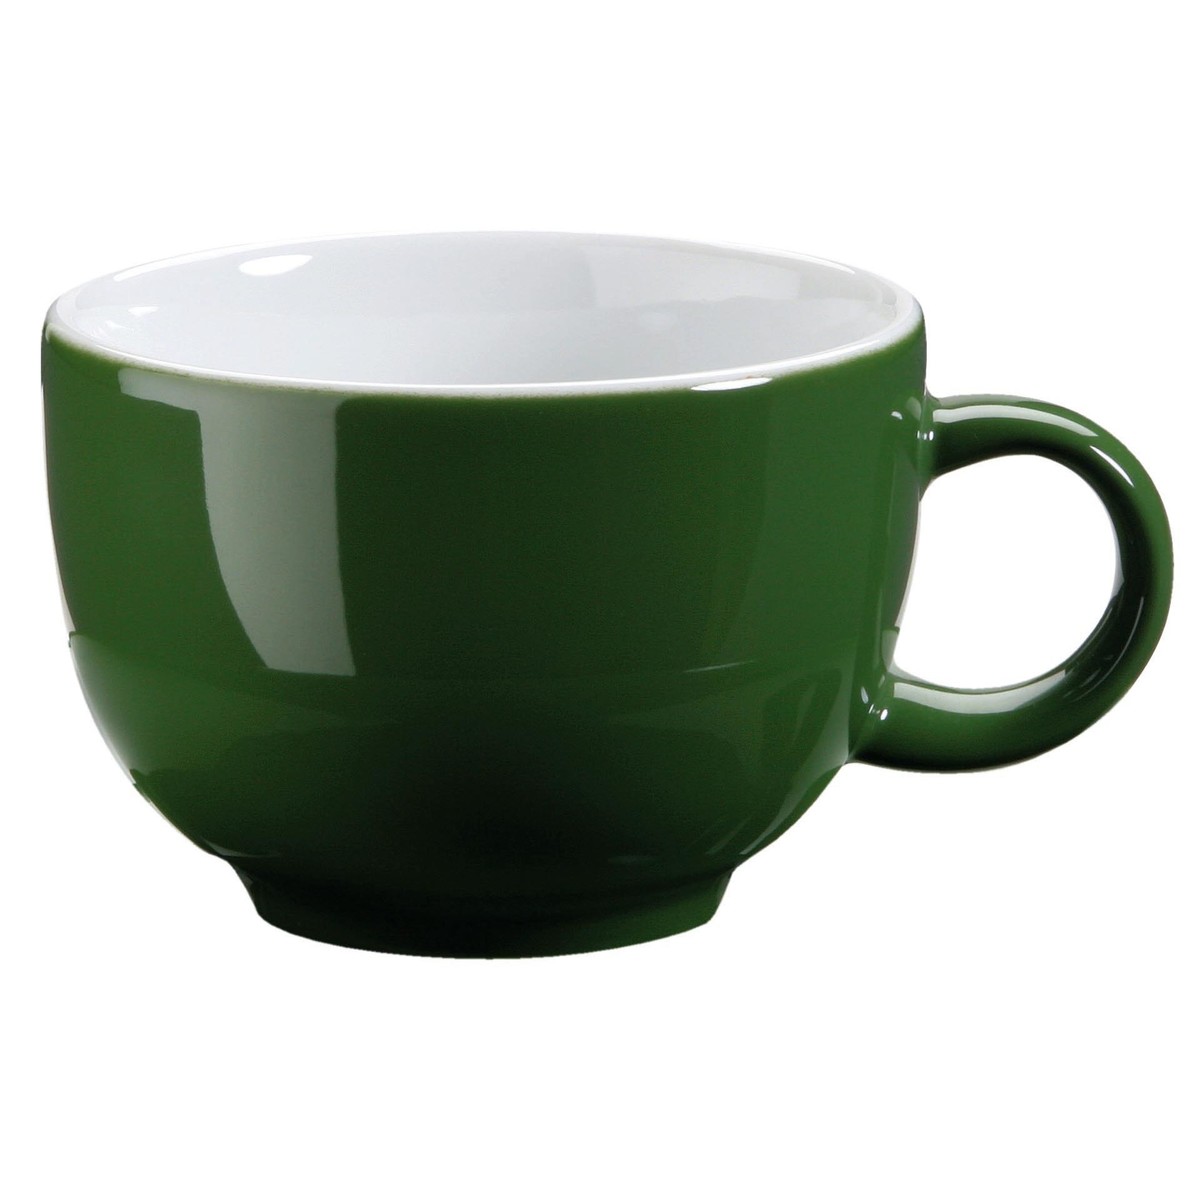 Kaffee-/Cappuccinotasse obere grün